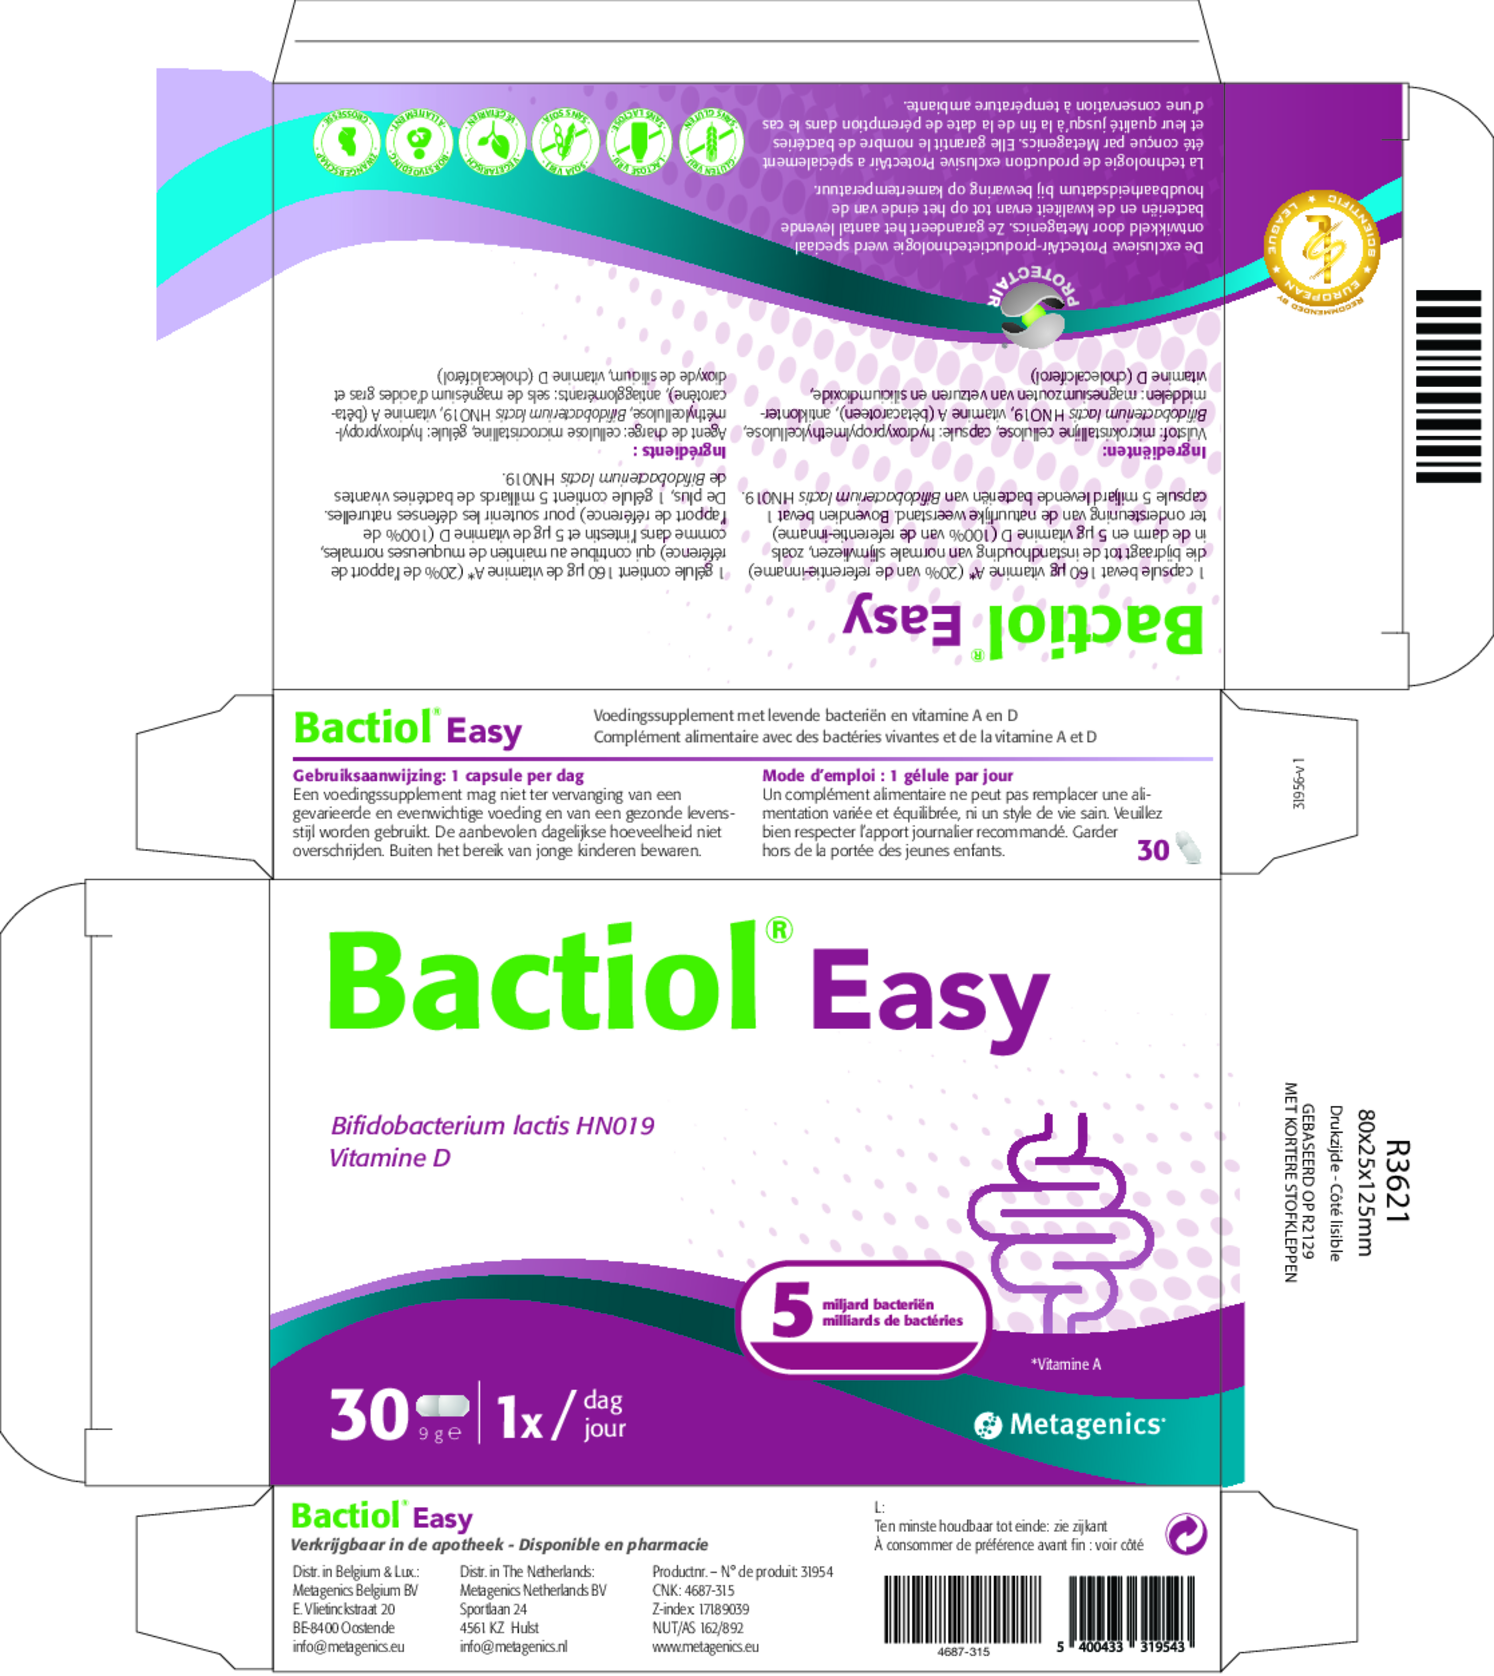 Bactiol Easy Capsules afbeelding van document #1, etiket